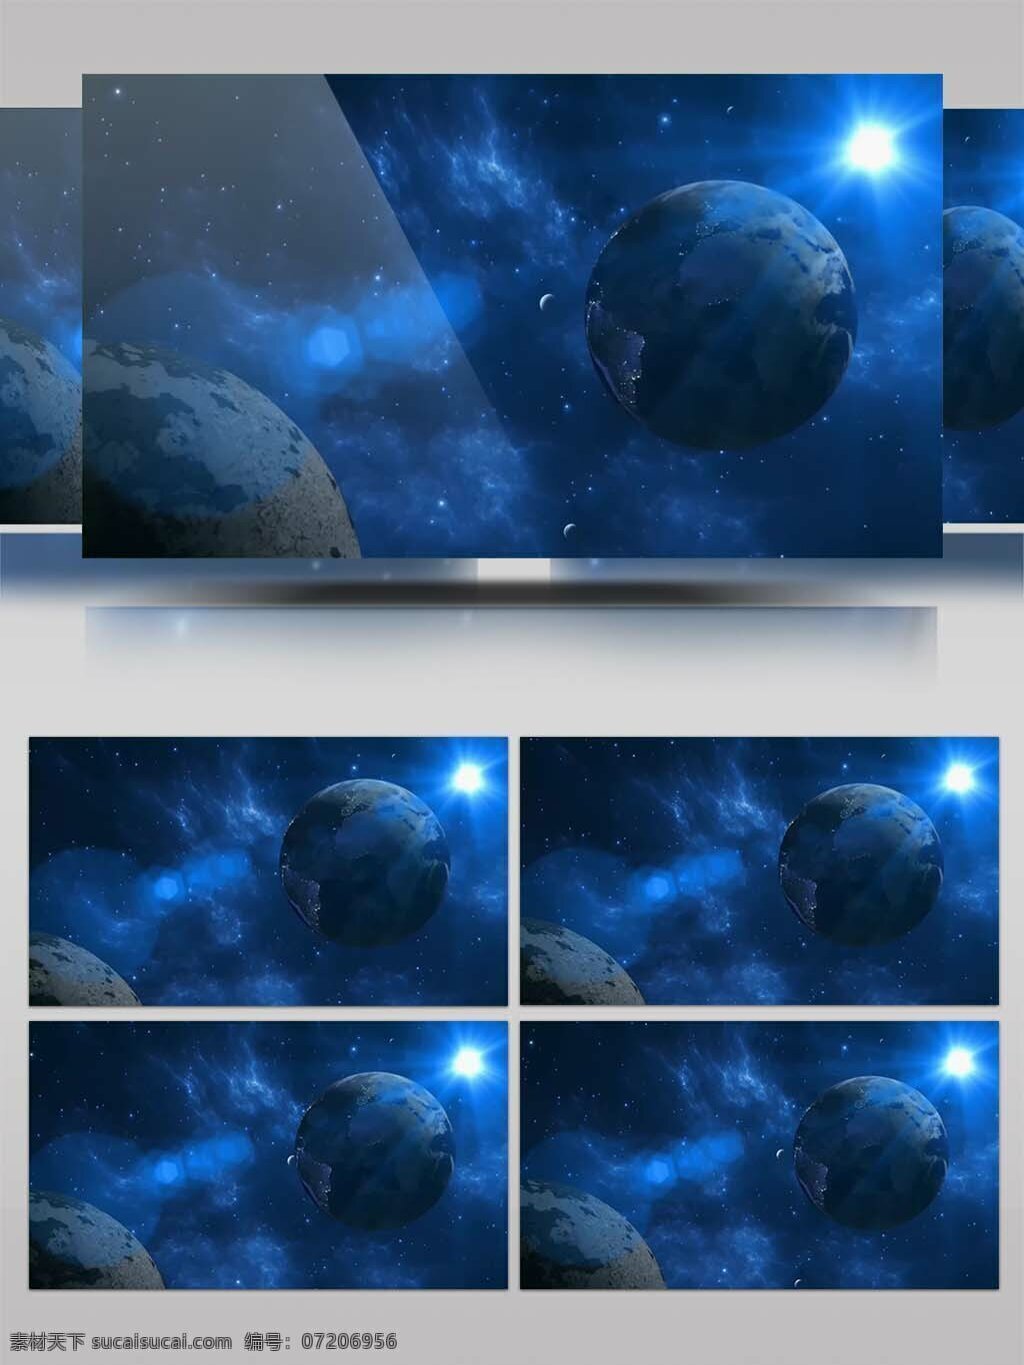 高清 蓝色 科技 星球 地球 动态 背景 光效 震撼 大气 星系 太阳系 影视 特效 宣传片 会声会影 后期制作 行星 陨石 撞击 飞行 大片 史诗